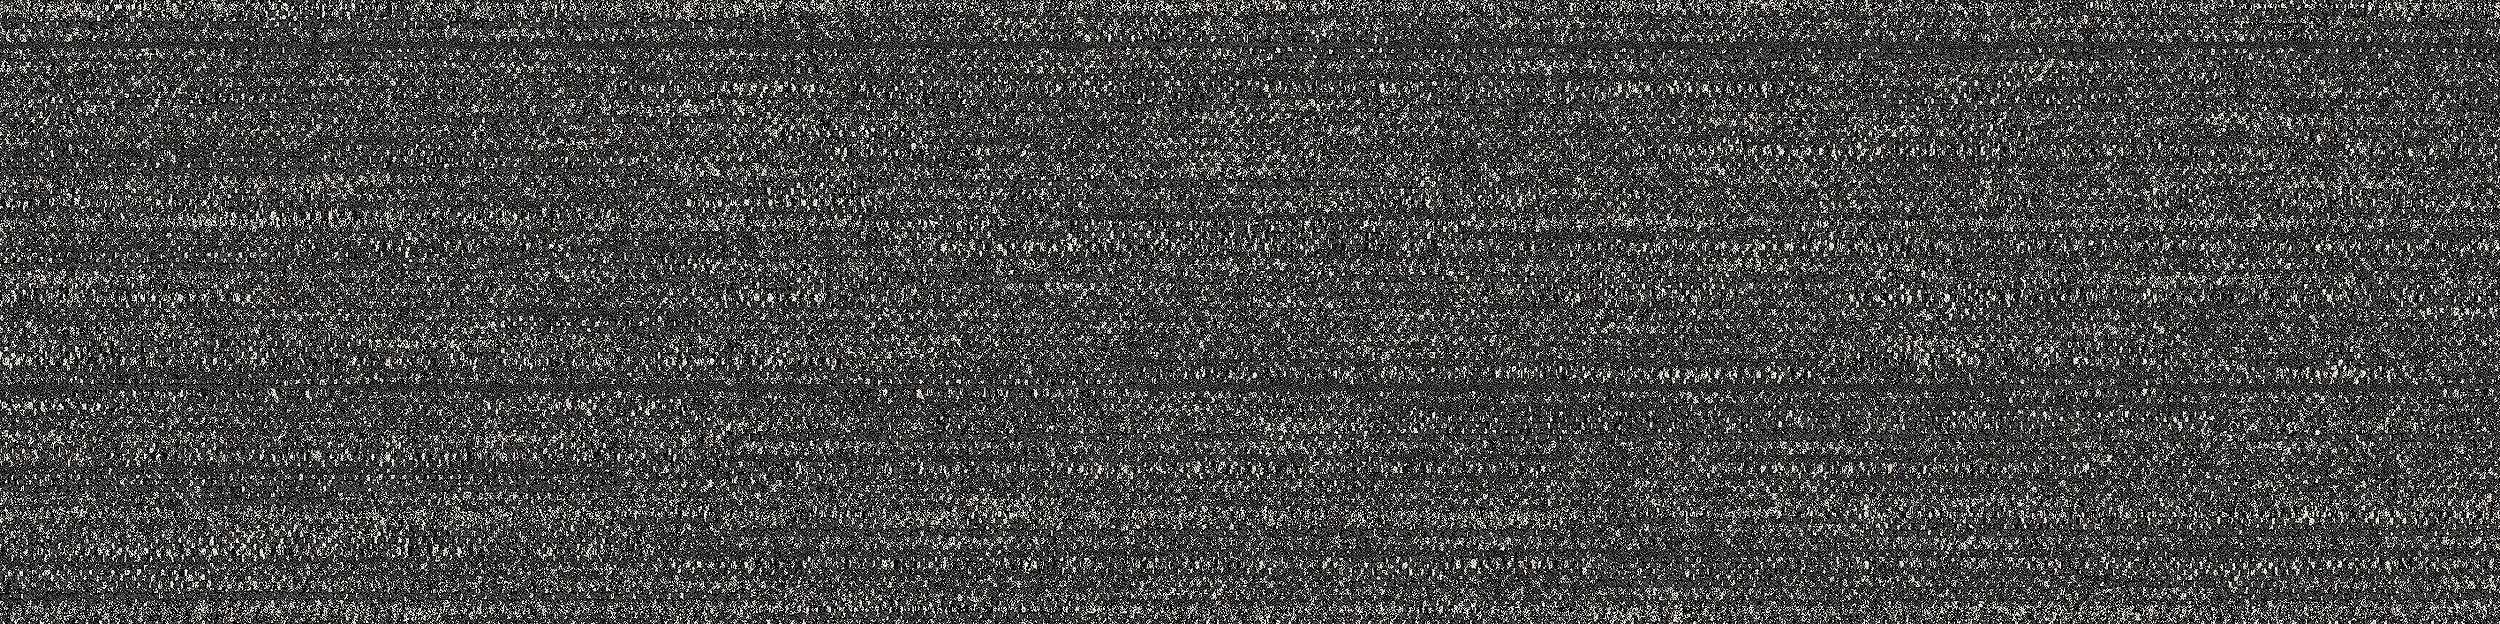 WW880 Carpet Tile In Black Loom image number 8